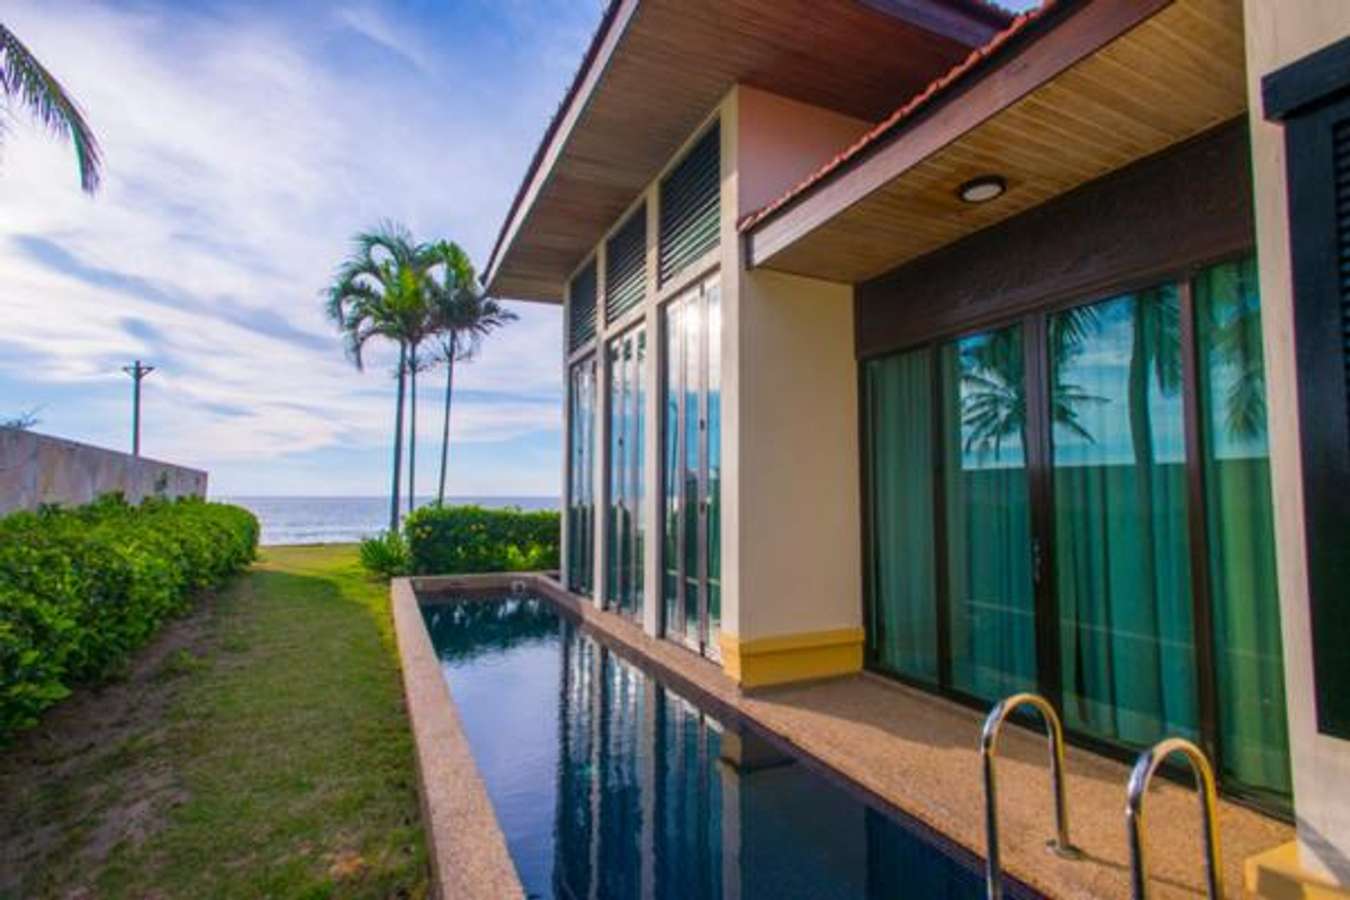 Borneo Beach Villas - Hotel with Private Pool Malaysia